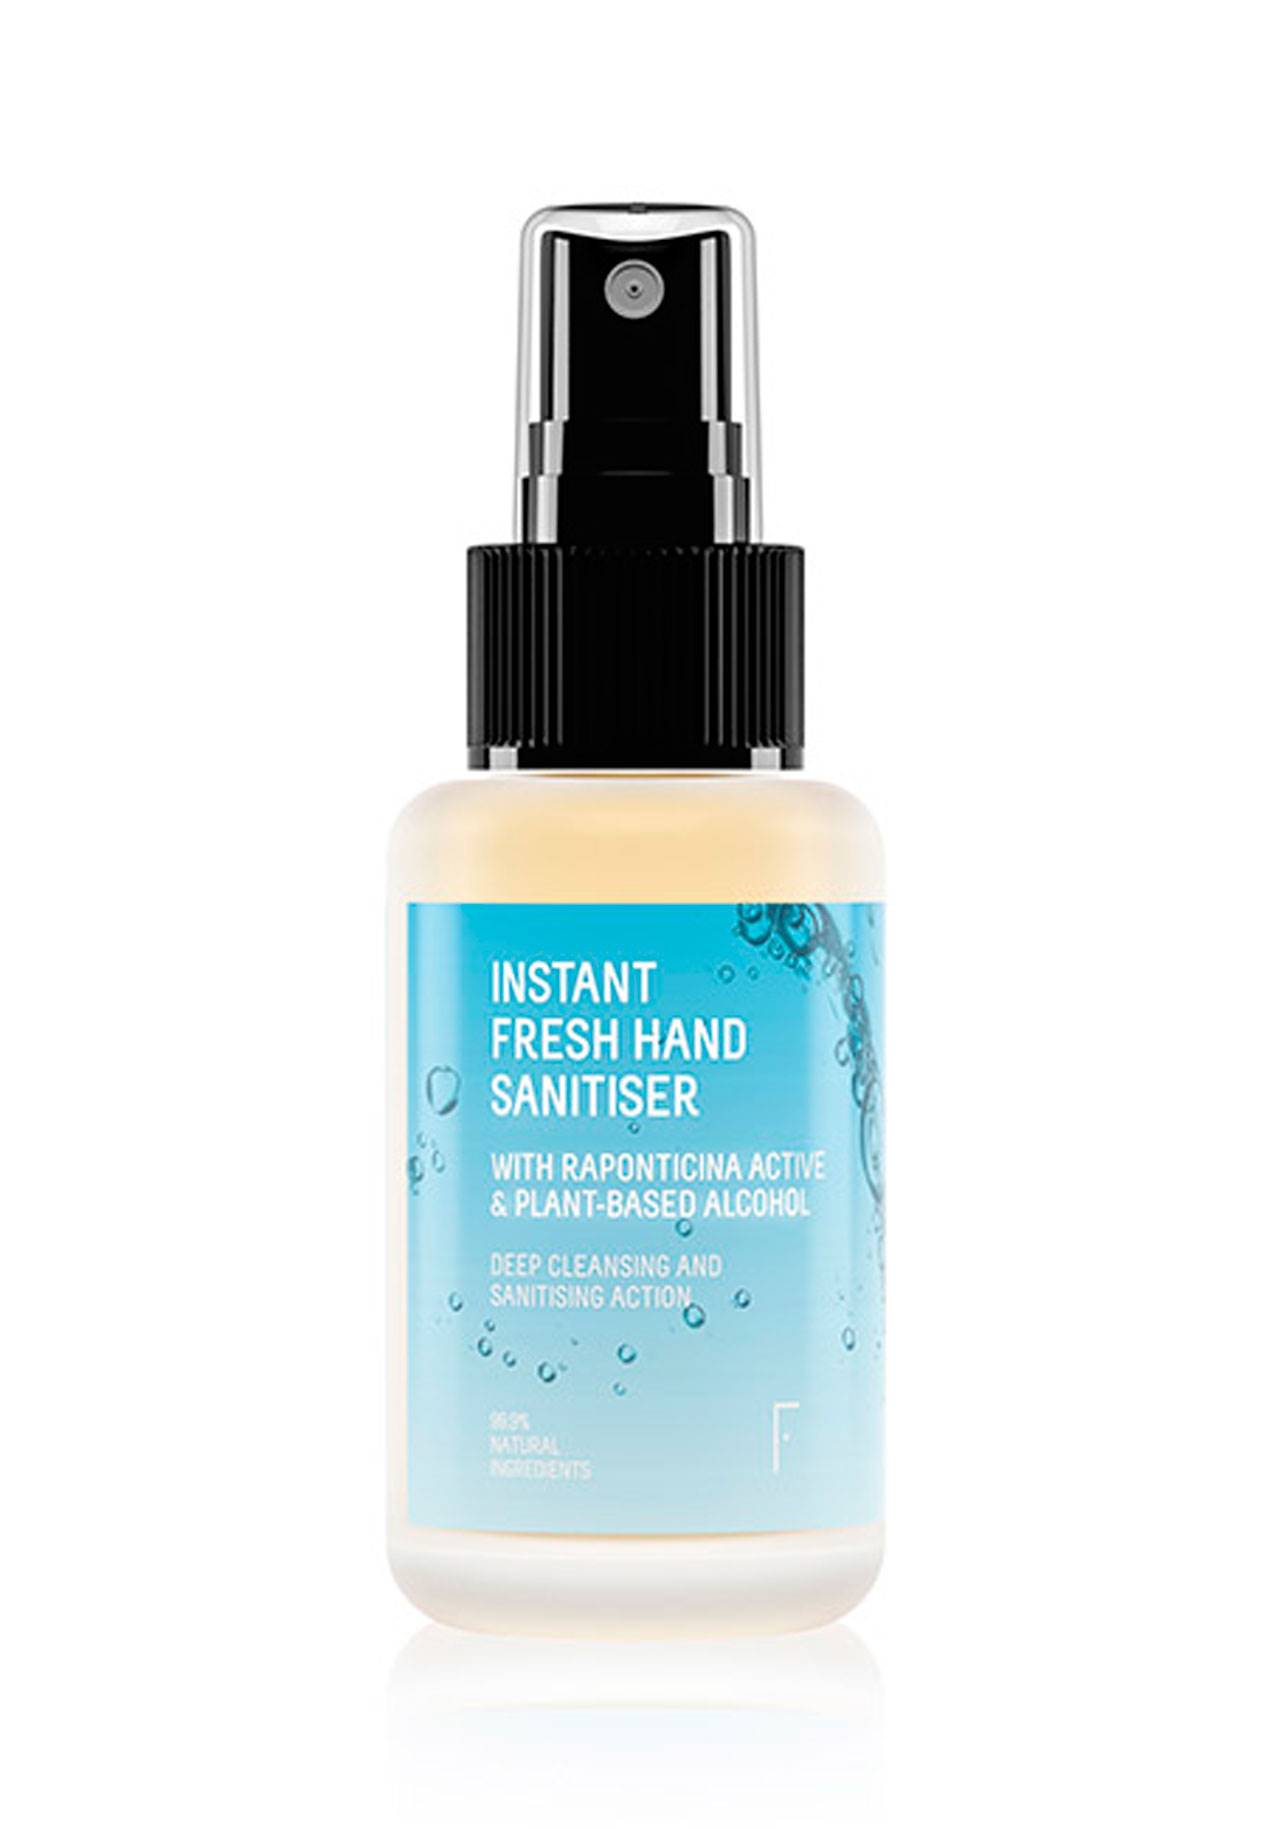           Instant Fresh Hand Sanitiser de Freshly Cosmetics